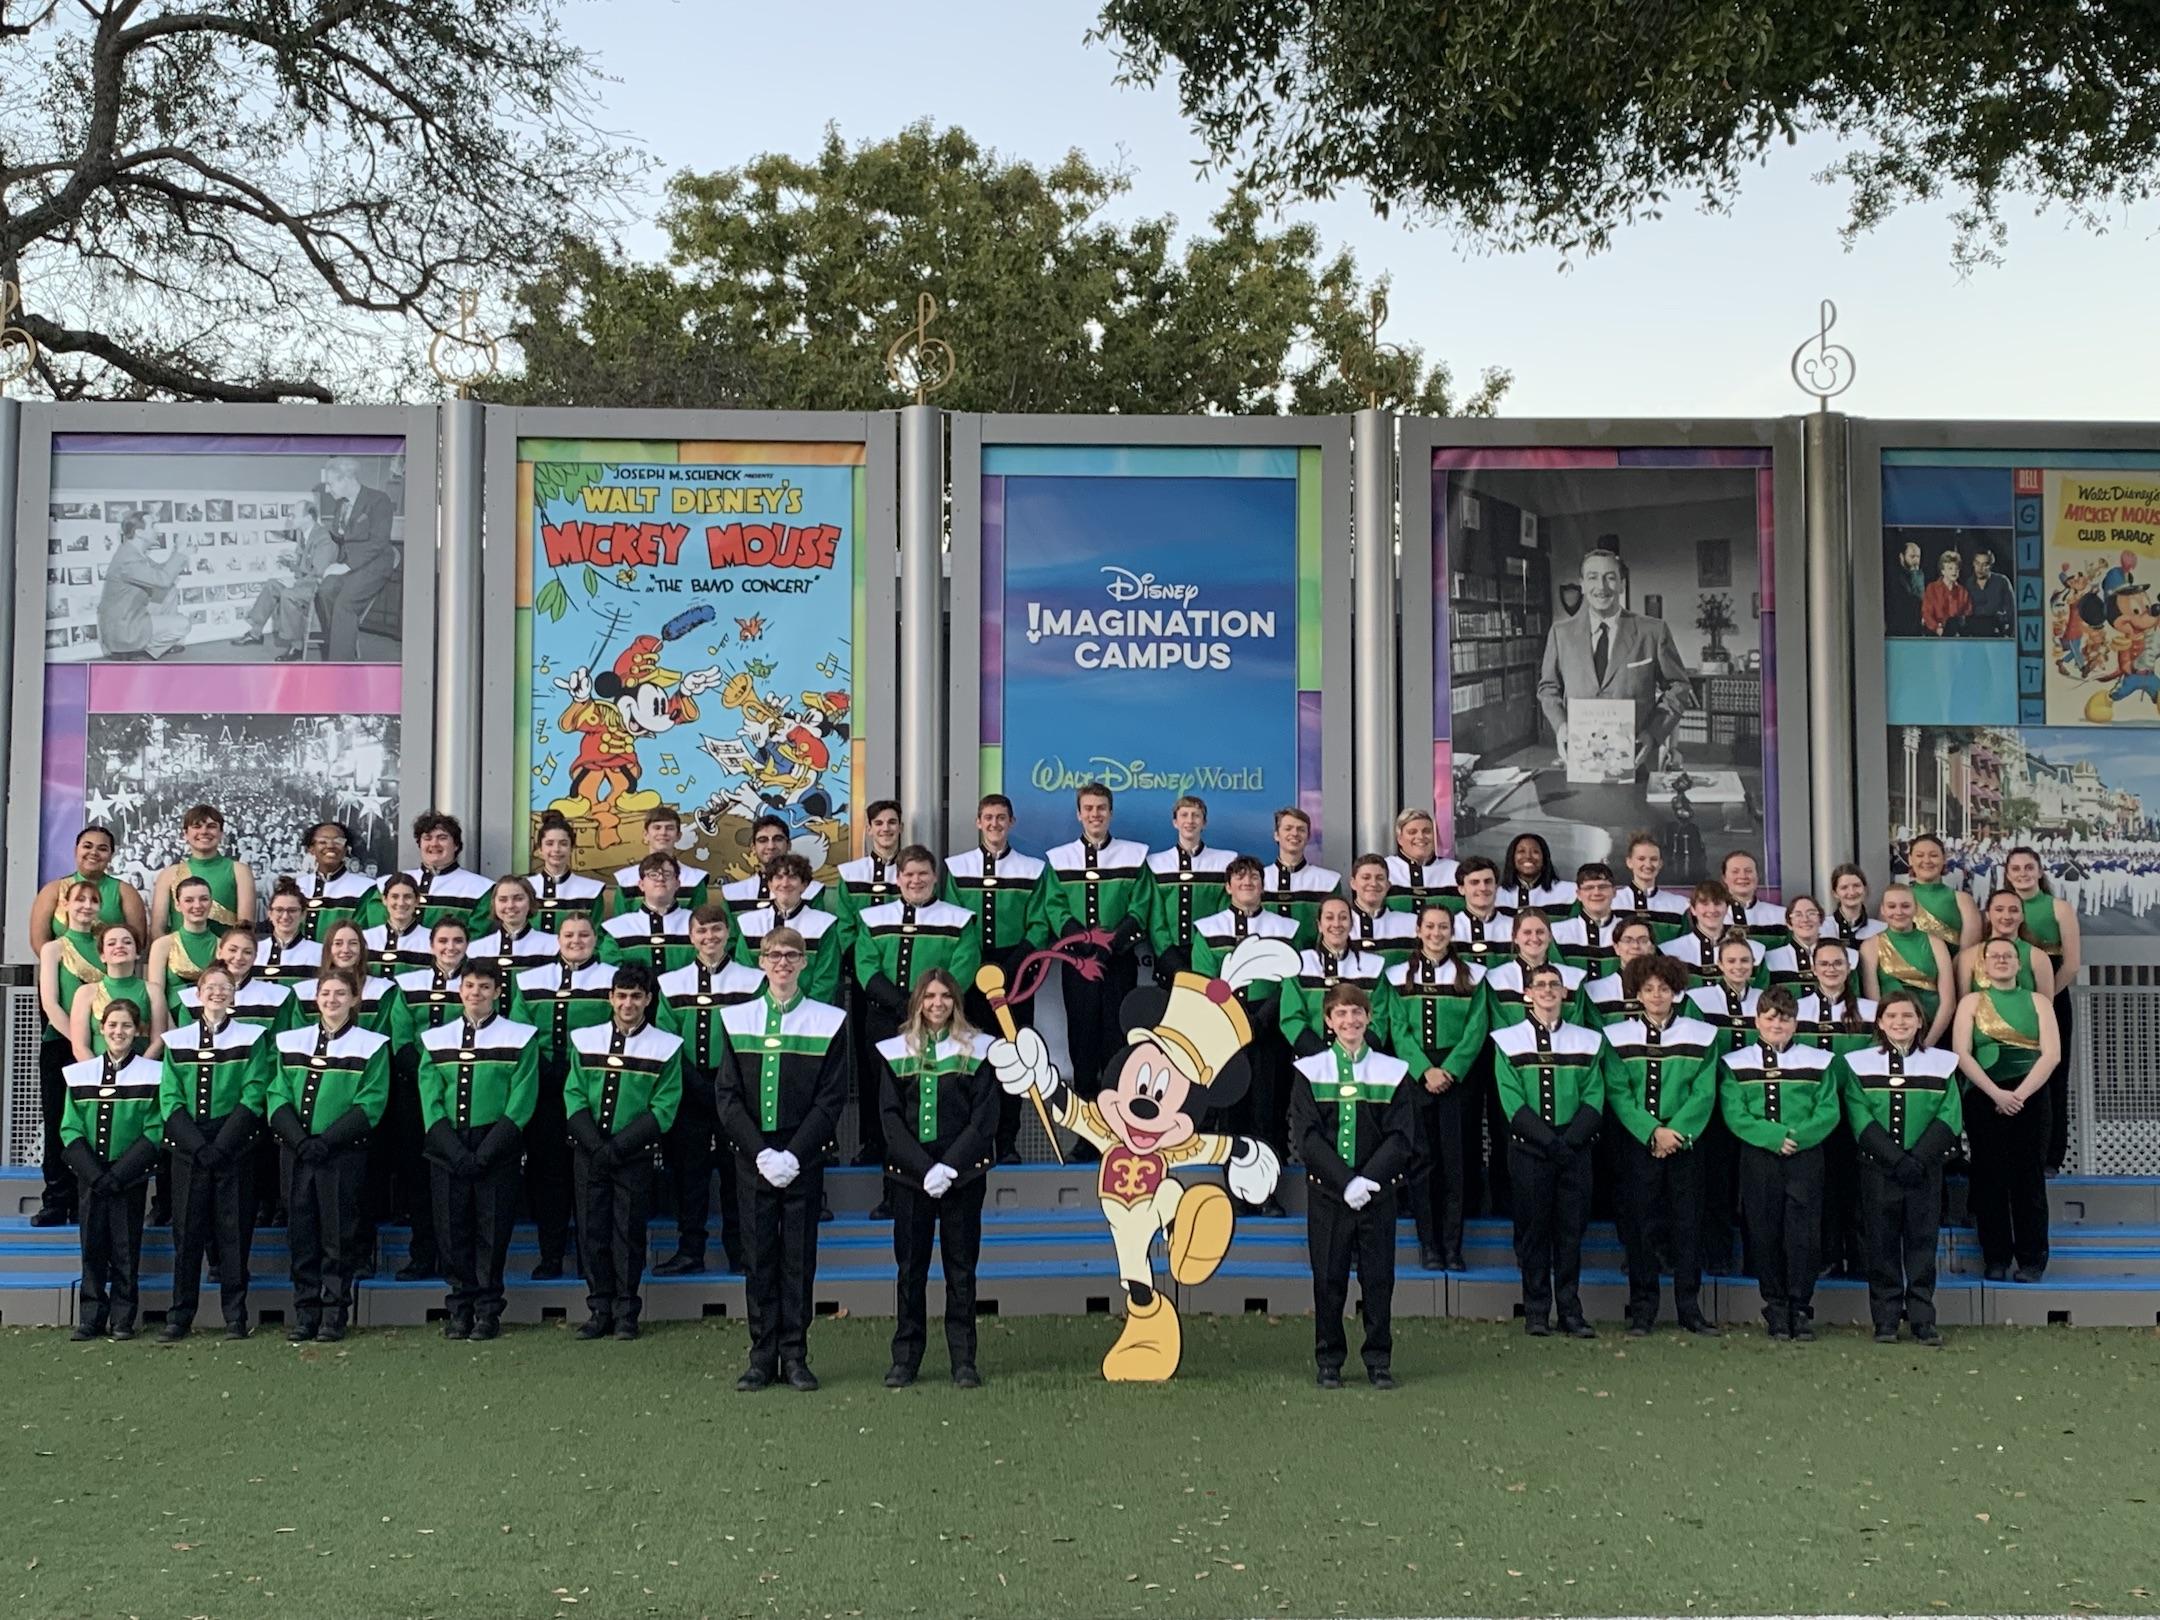 The band poses at Disney World